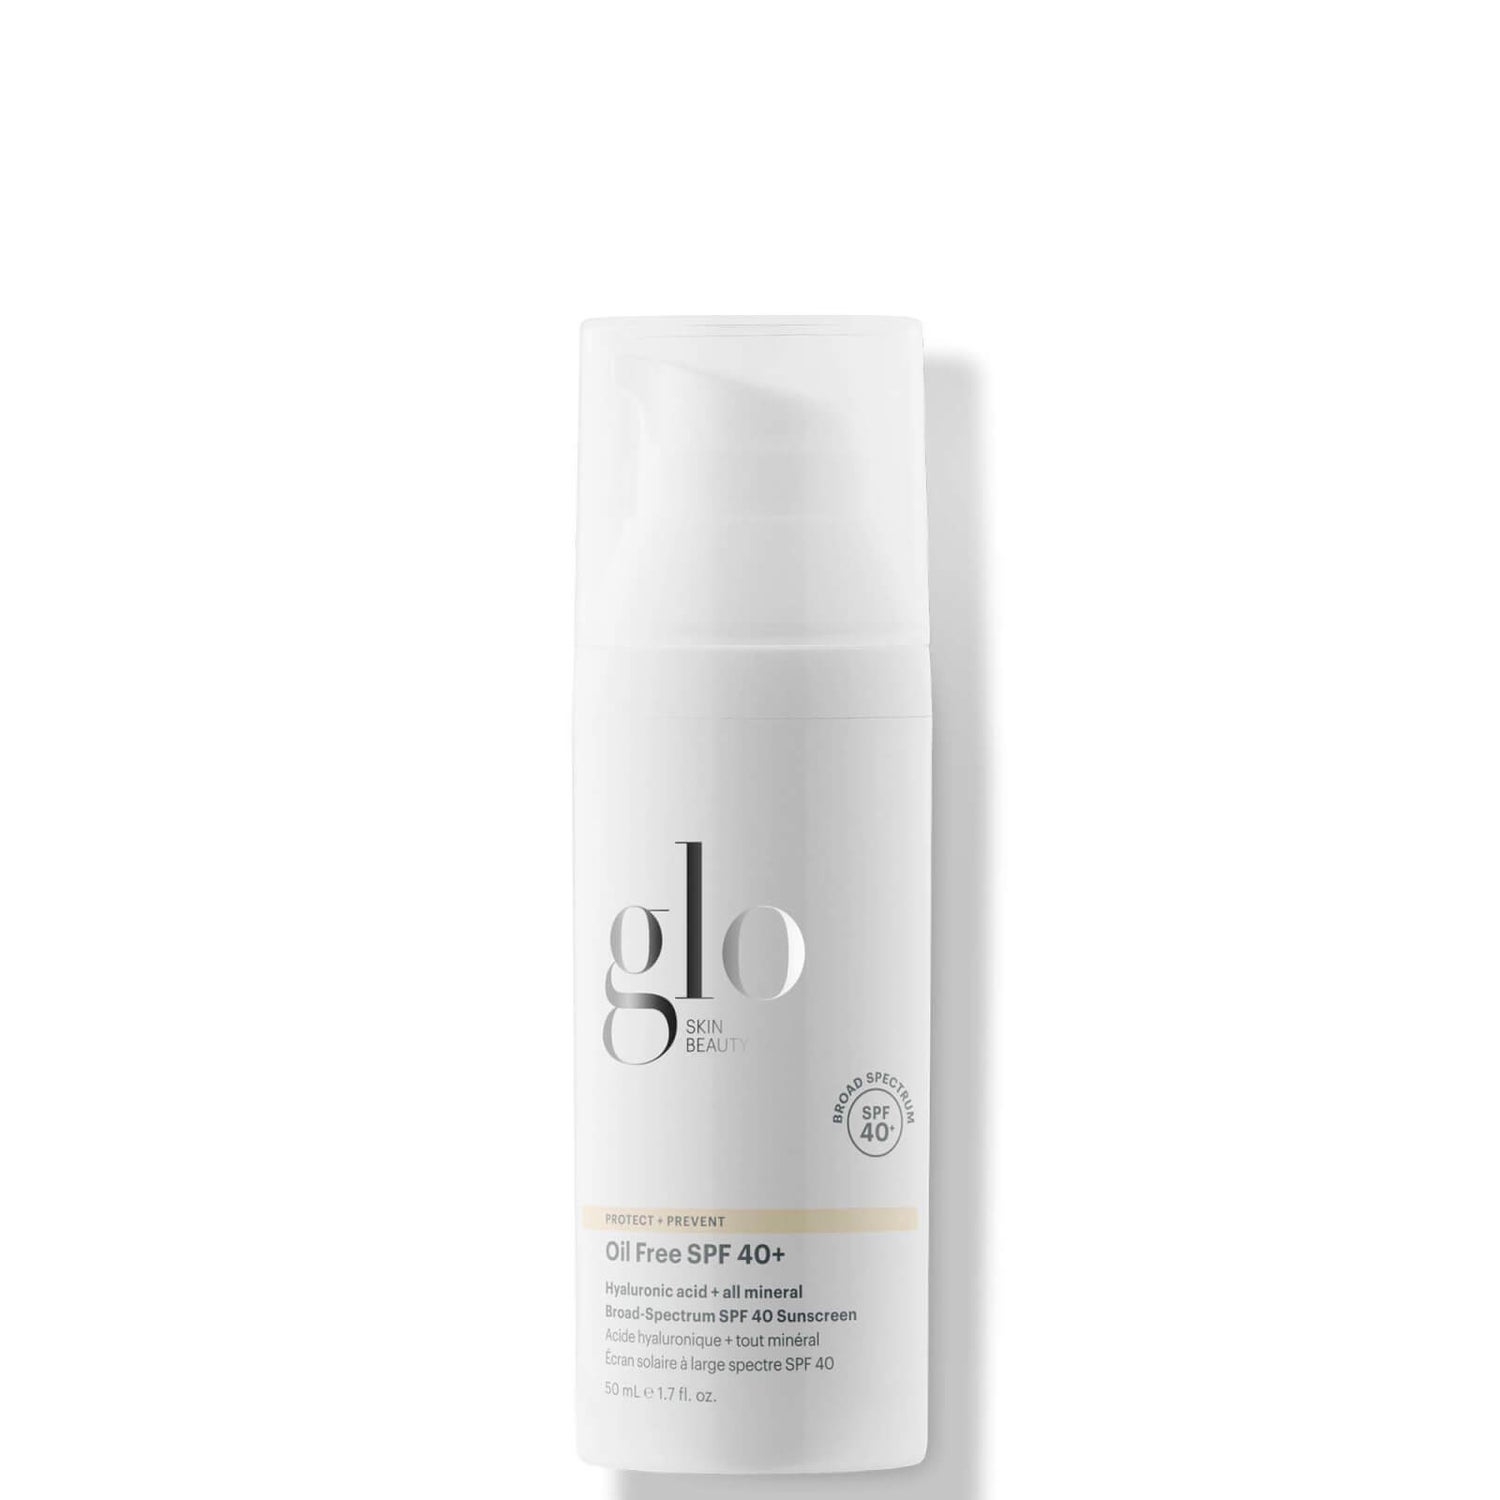 Glo Skin Beauty Oil Free SPF 40+ 1.7 fl. oz